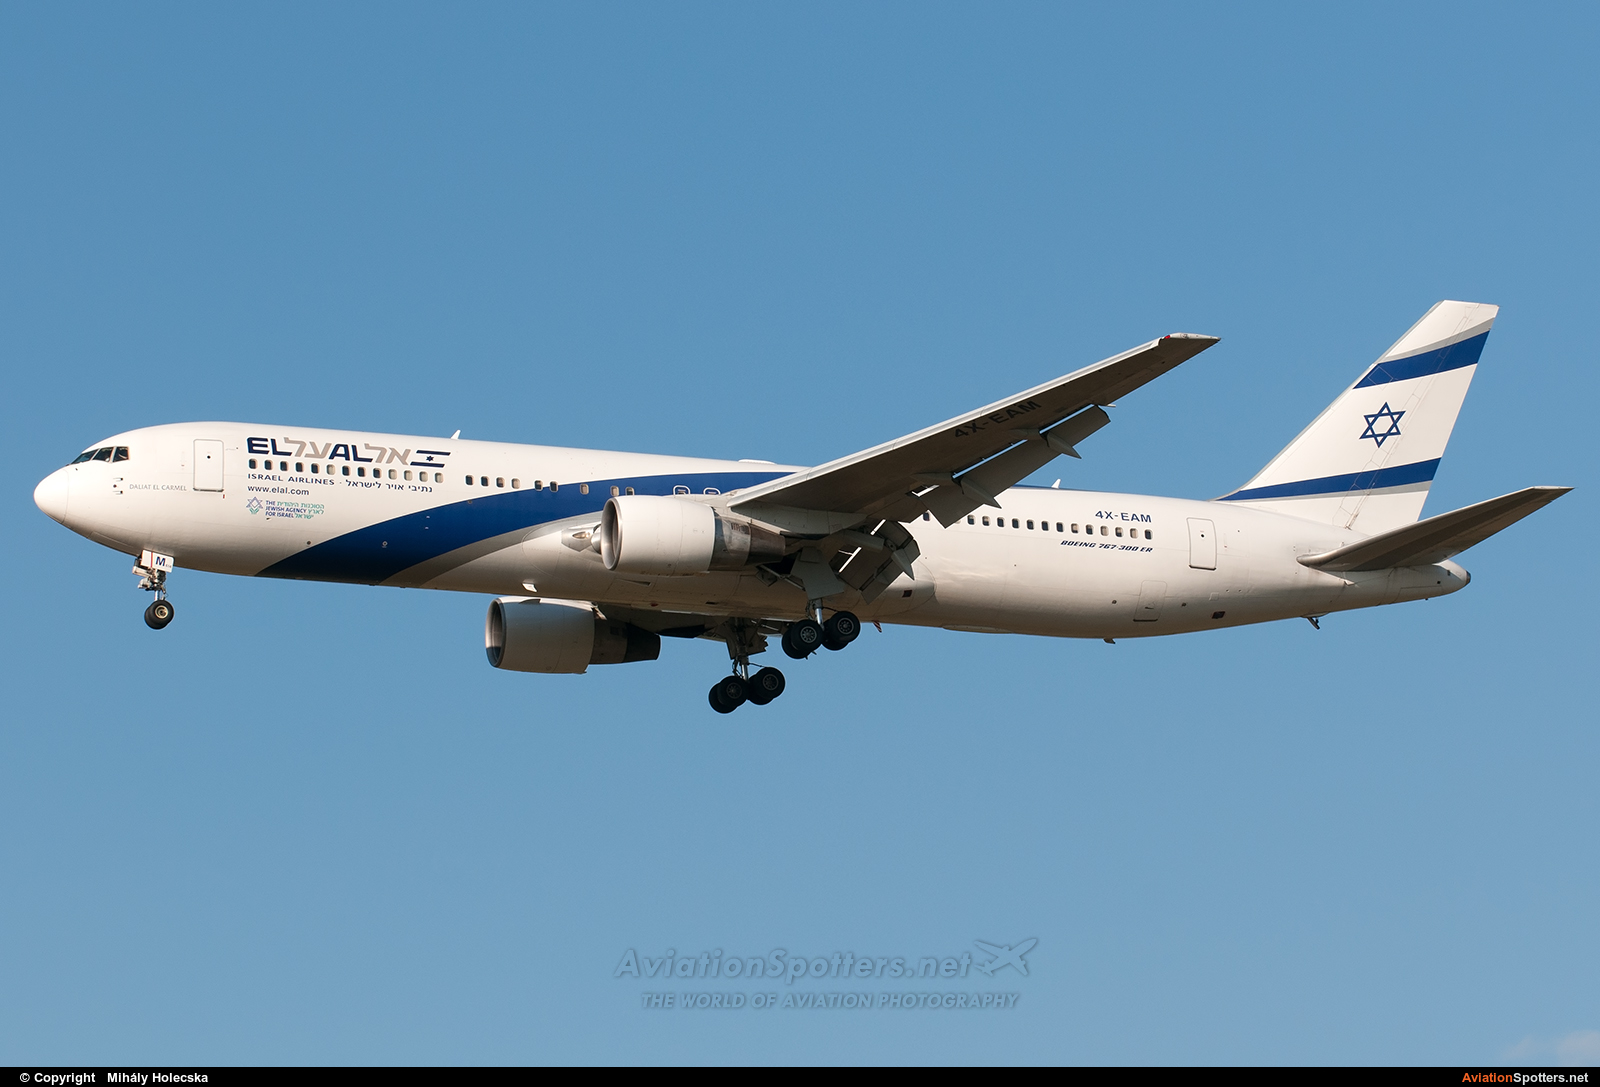 El Al Israel Airlines  -  767-300ER  (4X-EAM) By Mihály Holecska (Misixx)